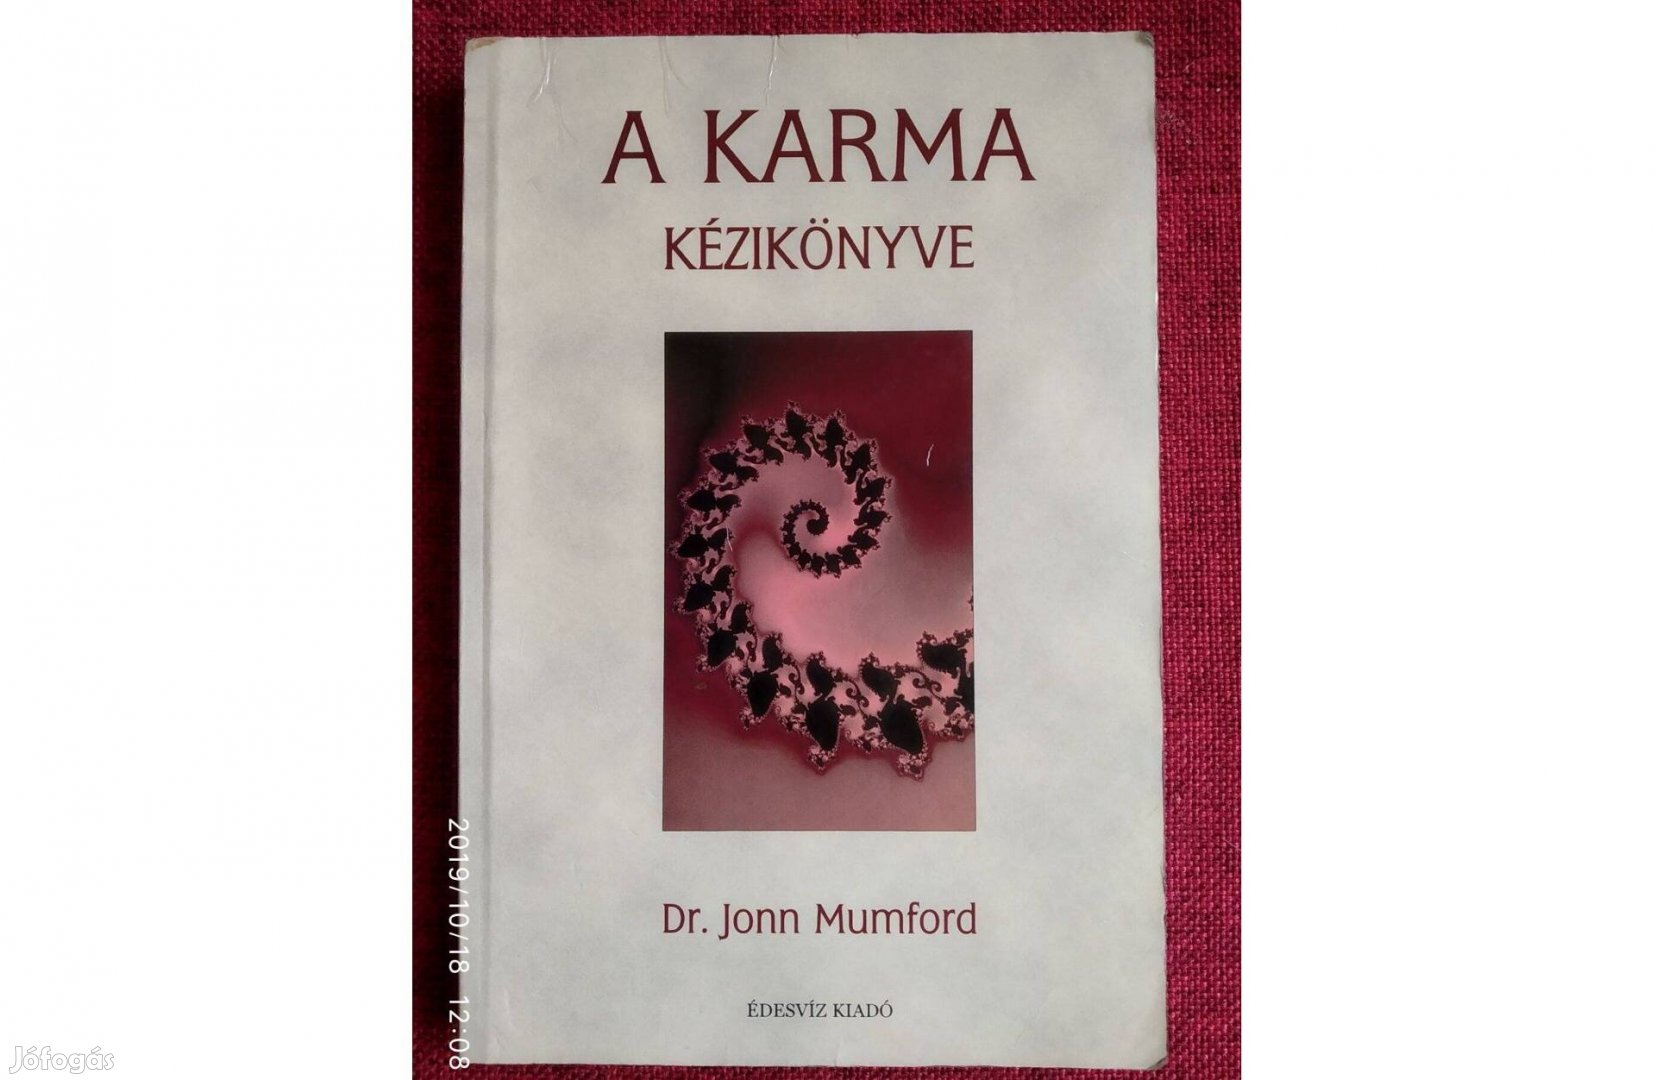 A karma kézikönyve Dr John Mumford